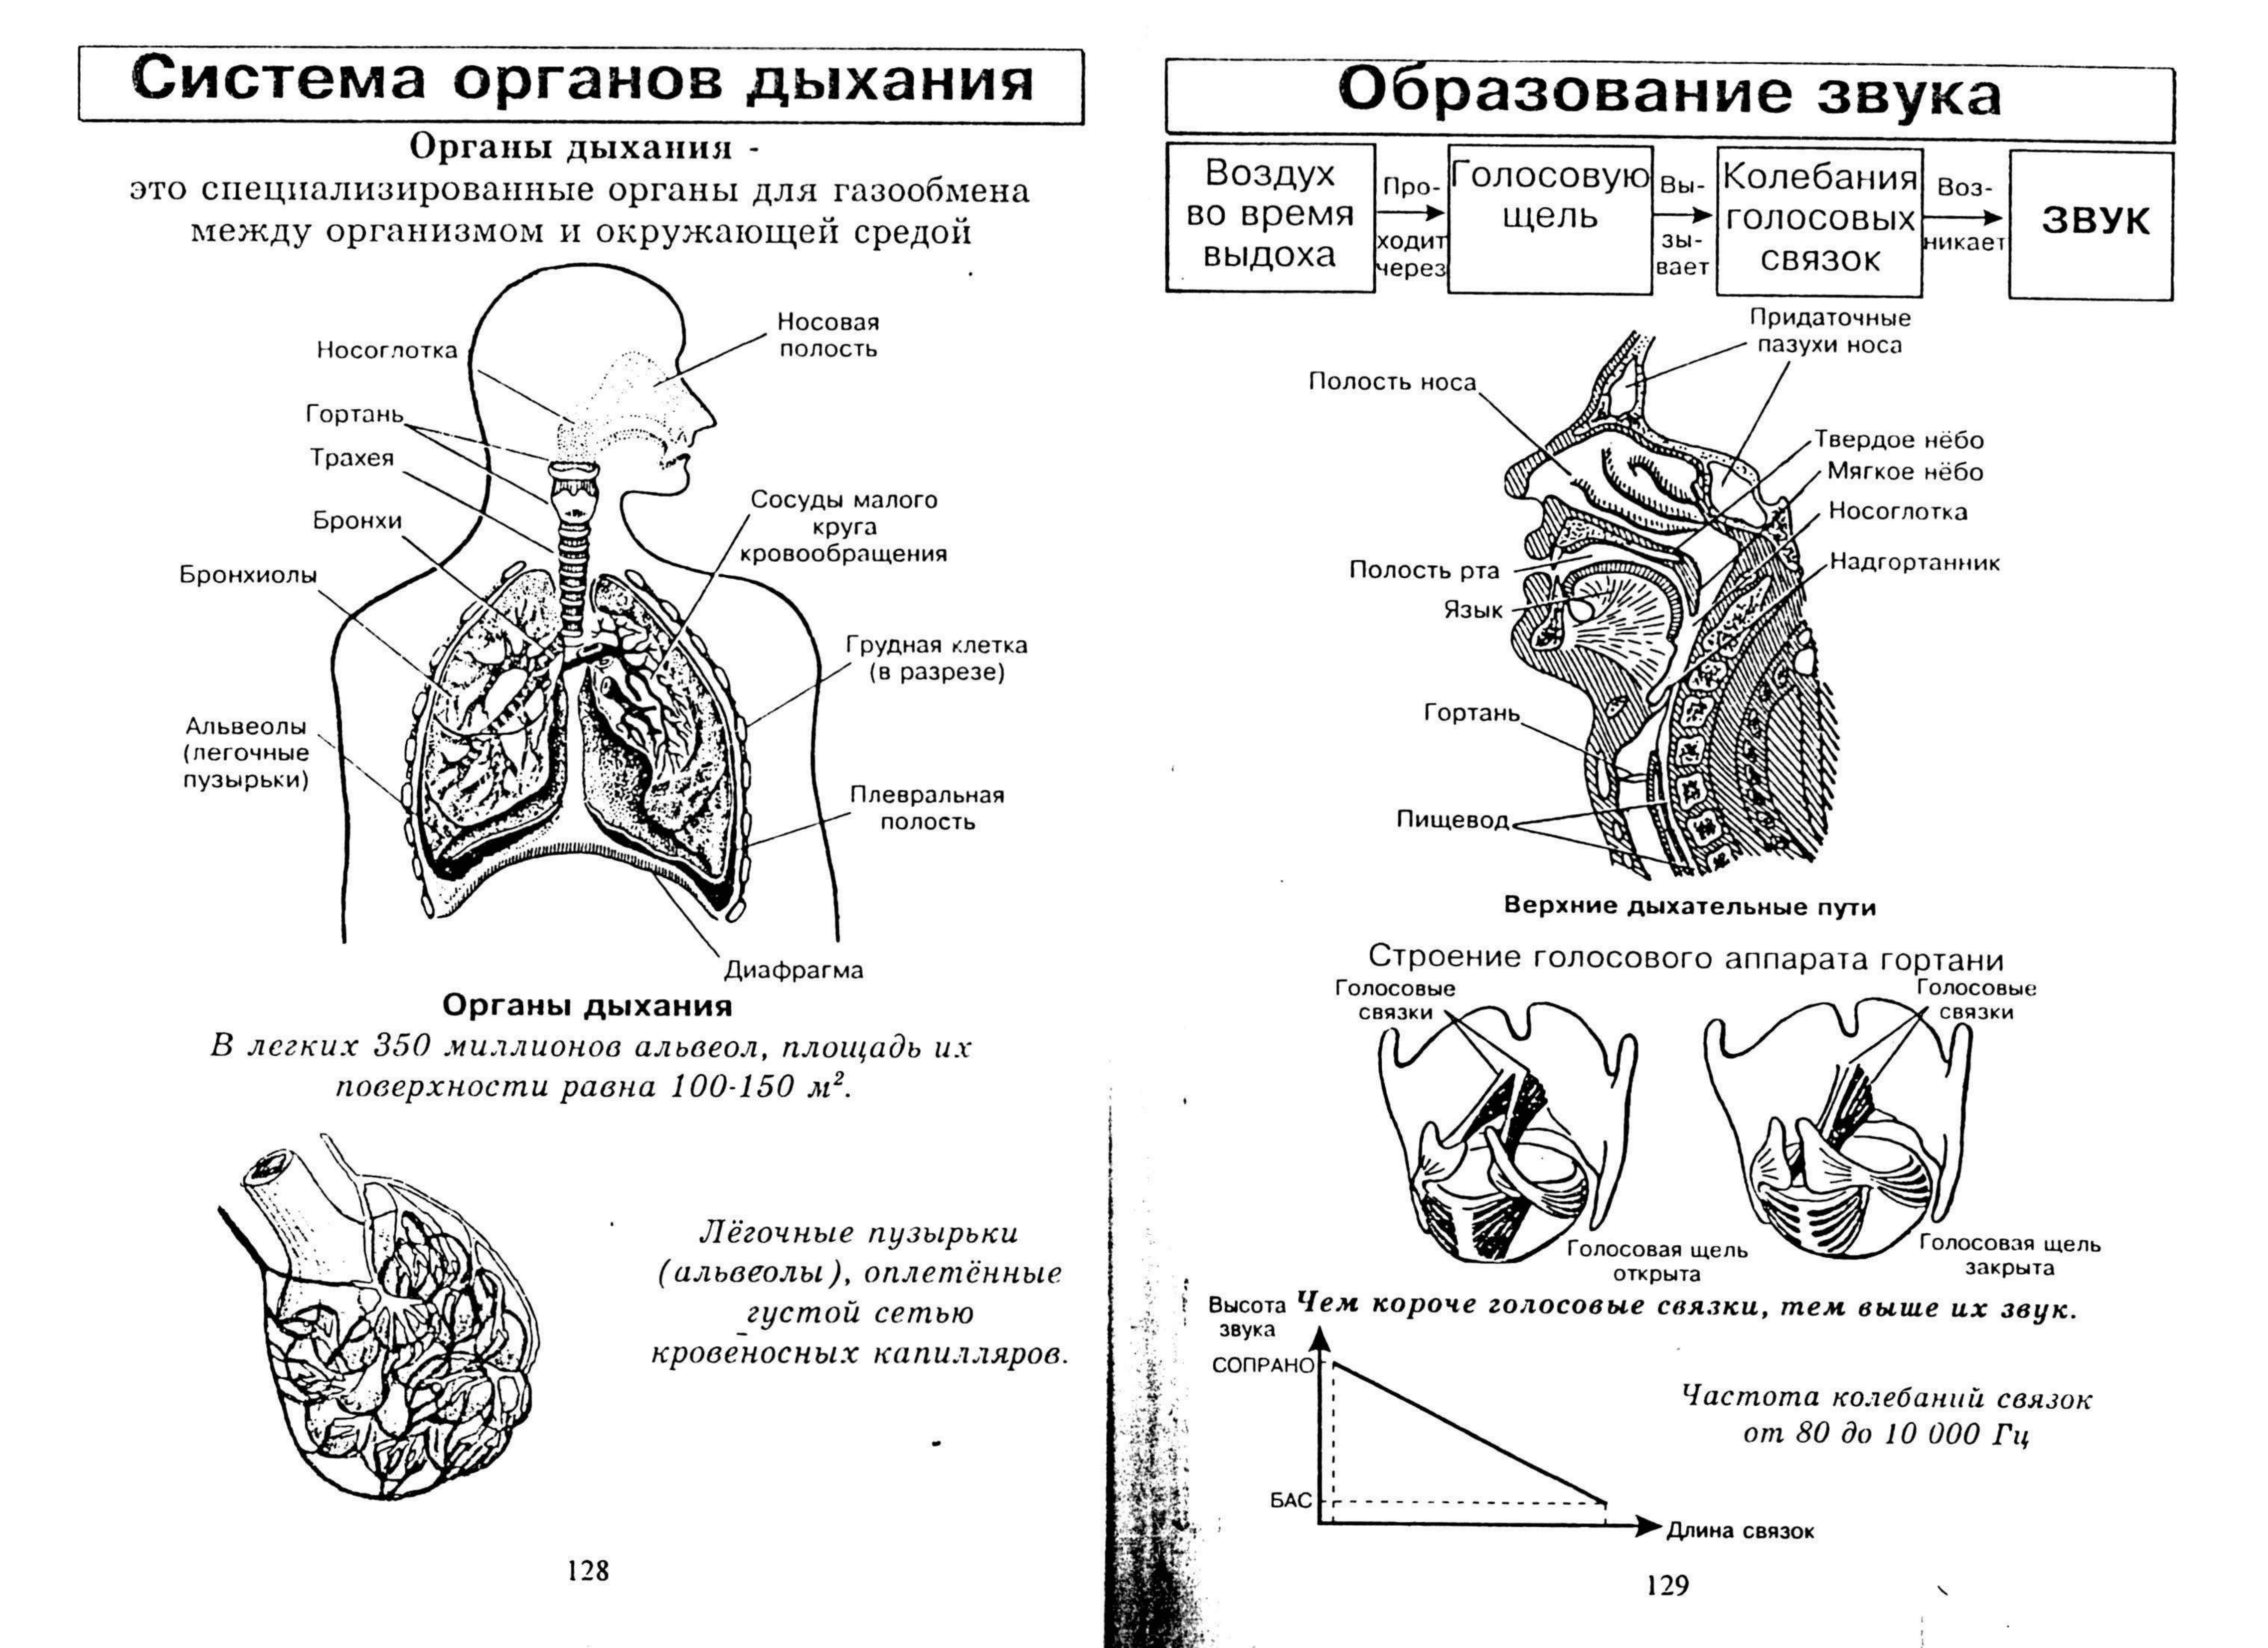 Схема органов дыхательной системы функции